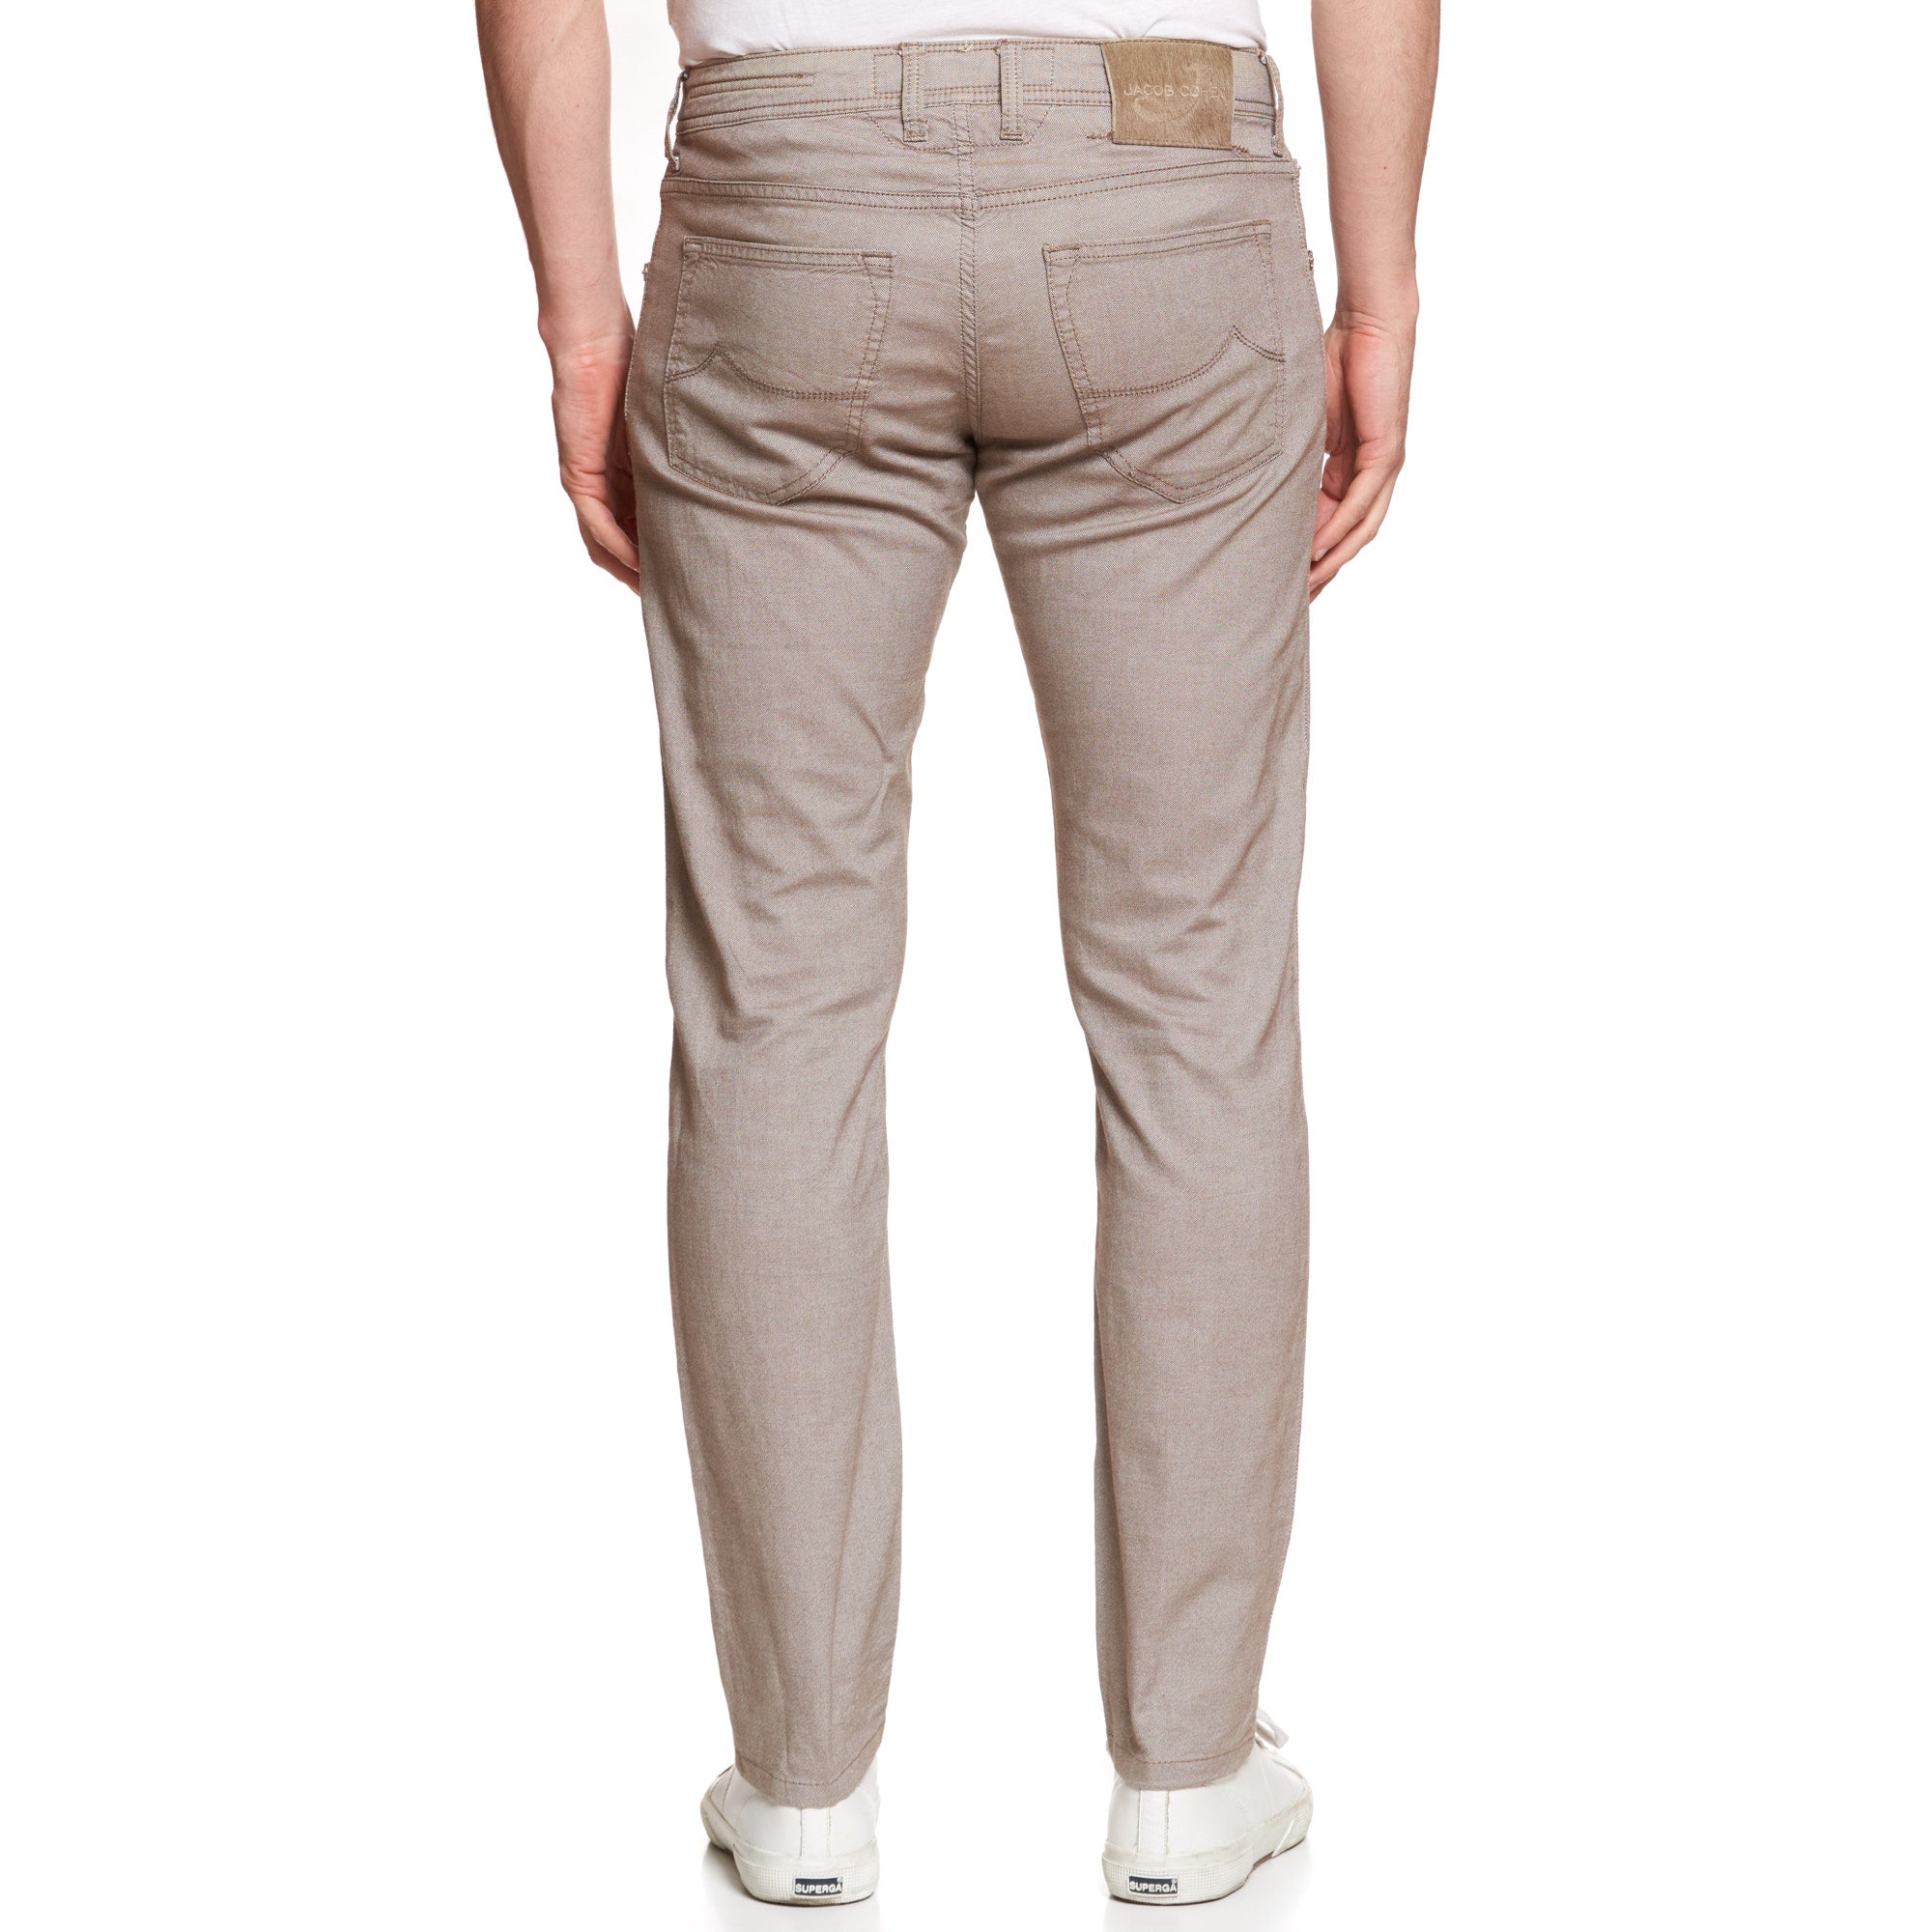 JACOB COHEN W622 Comfort Light Brown Cotton Stretch Slim Fit Jeans Pants US 33 JACOB COHEN